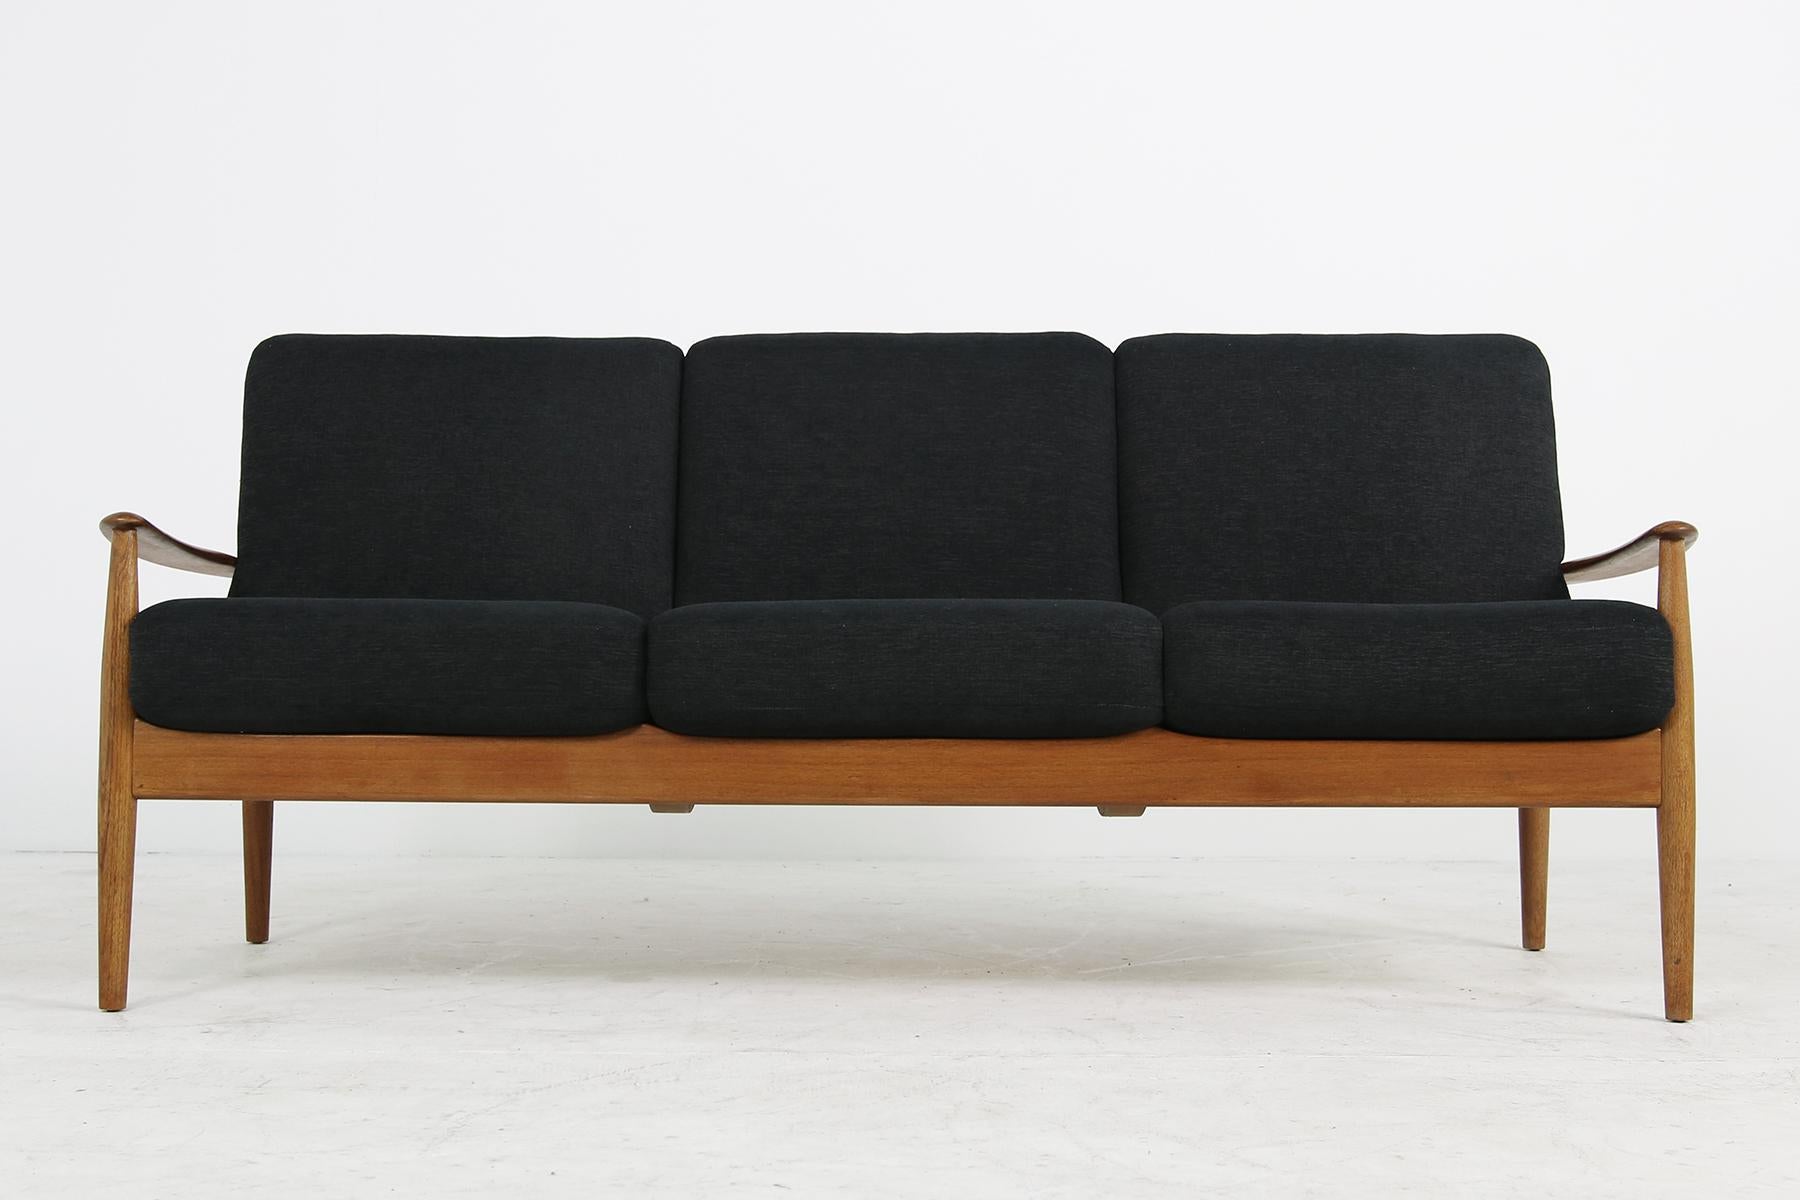 Mid-Century Modern 1960s Danish Modern Teak Sofa by Grete Jalk for France & Son Model 118/3